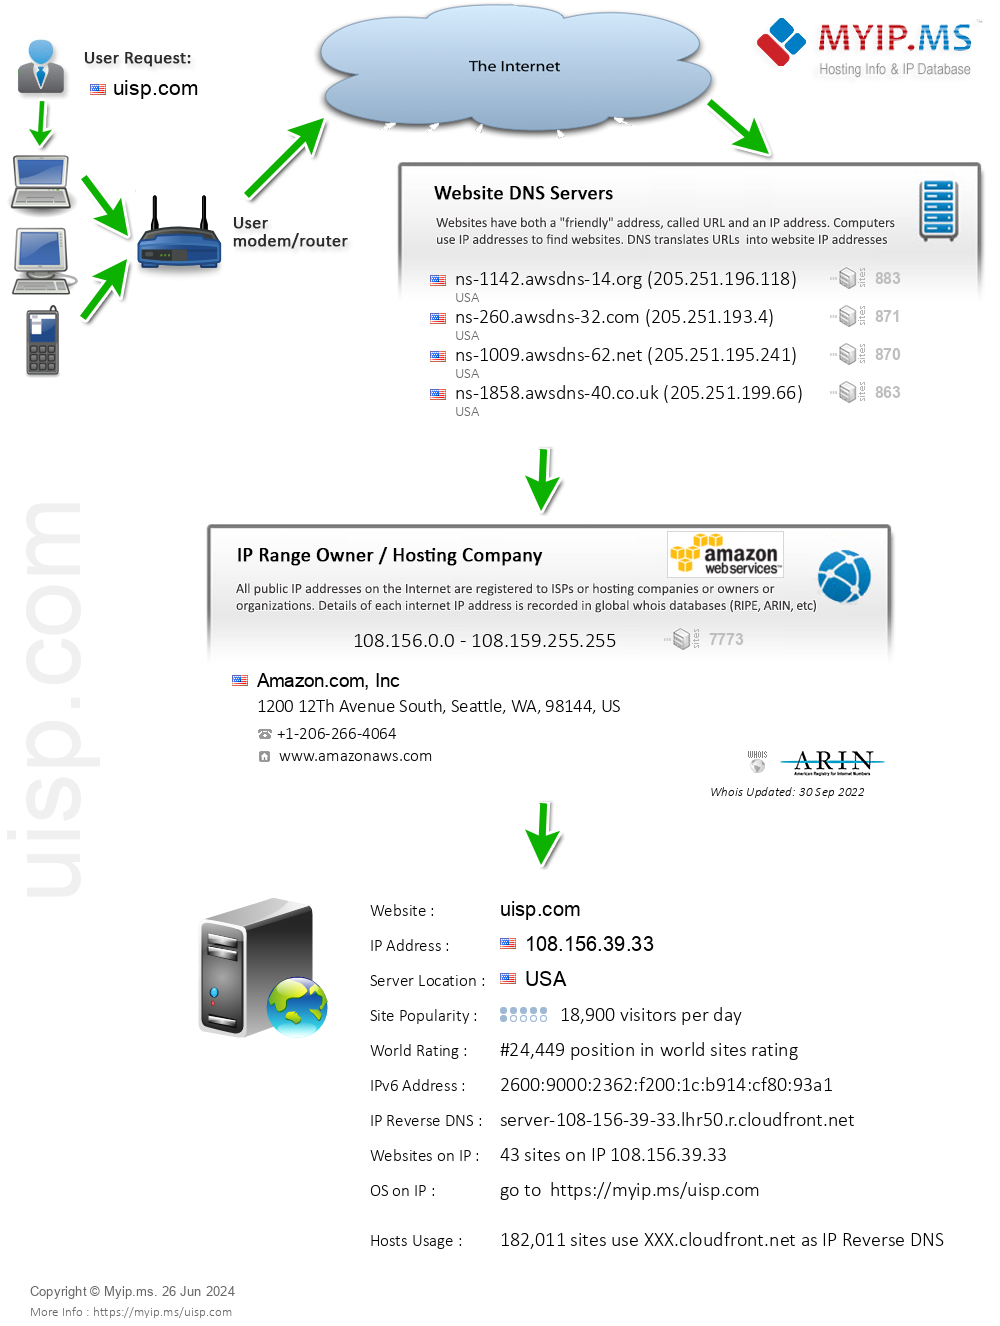 Uisp.com - Website Hosting Visual IP Diagram